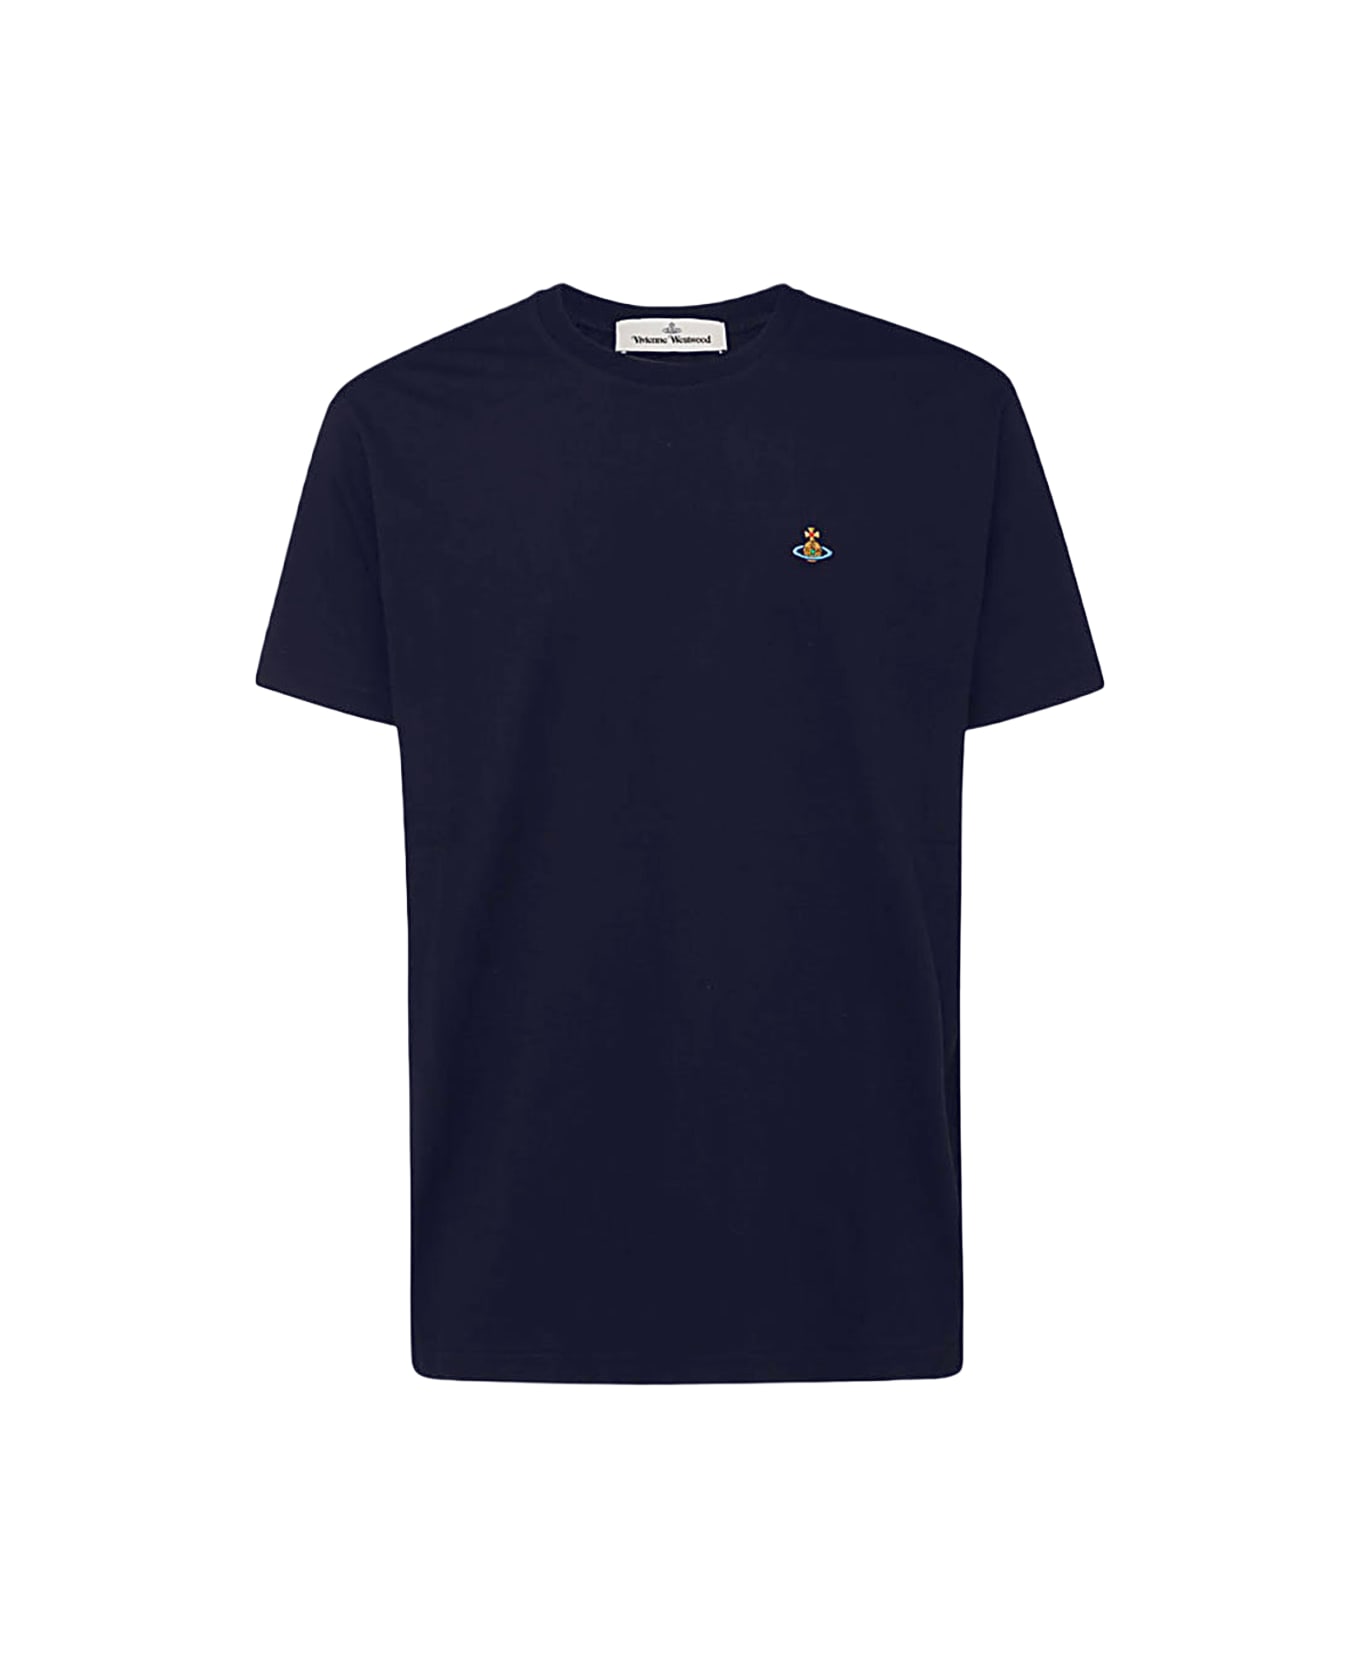 Vivienne Westwood Navy Blue Cotton T-shirt - Blue Tシャツ